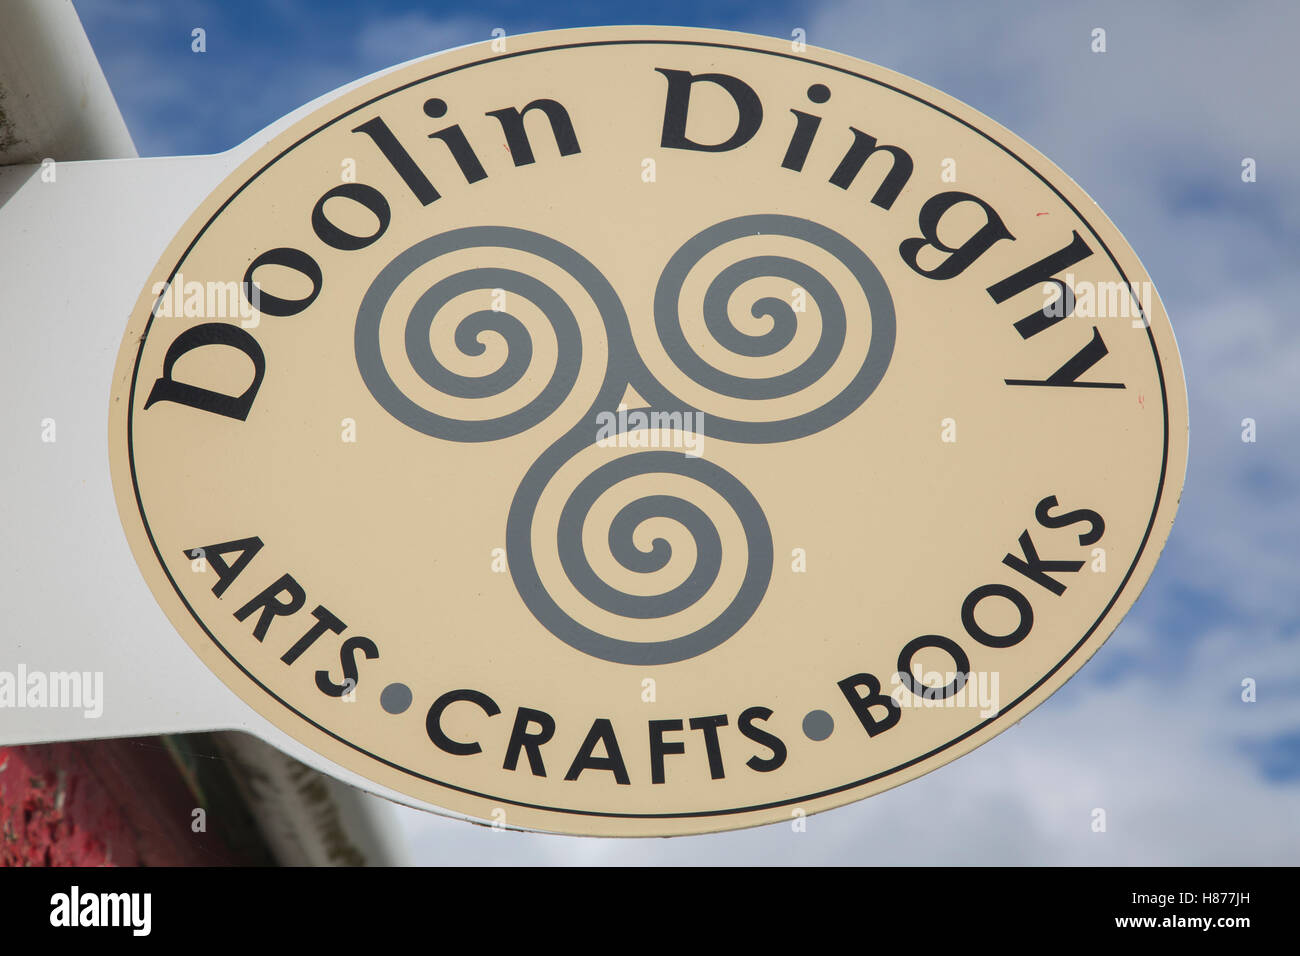 Doolin Dinghy arte, artigianato e Book Shop segno, Irlanda Foto Stock